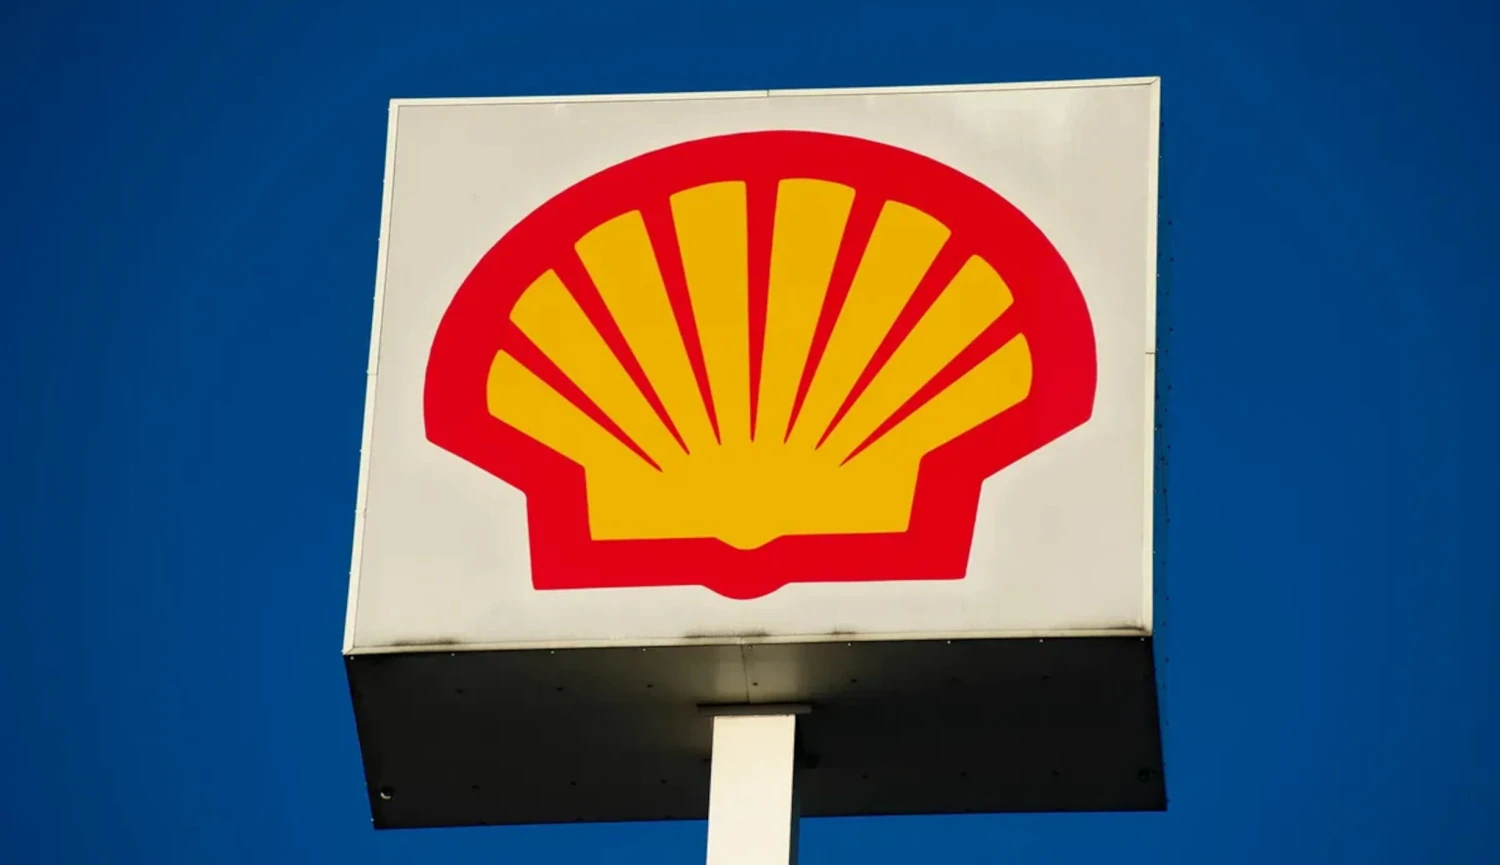 Shell stáčí kormidlo zpět k fosilním palivům. Nečekané, ale racionální, říká analytik